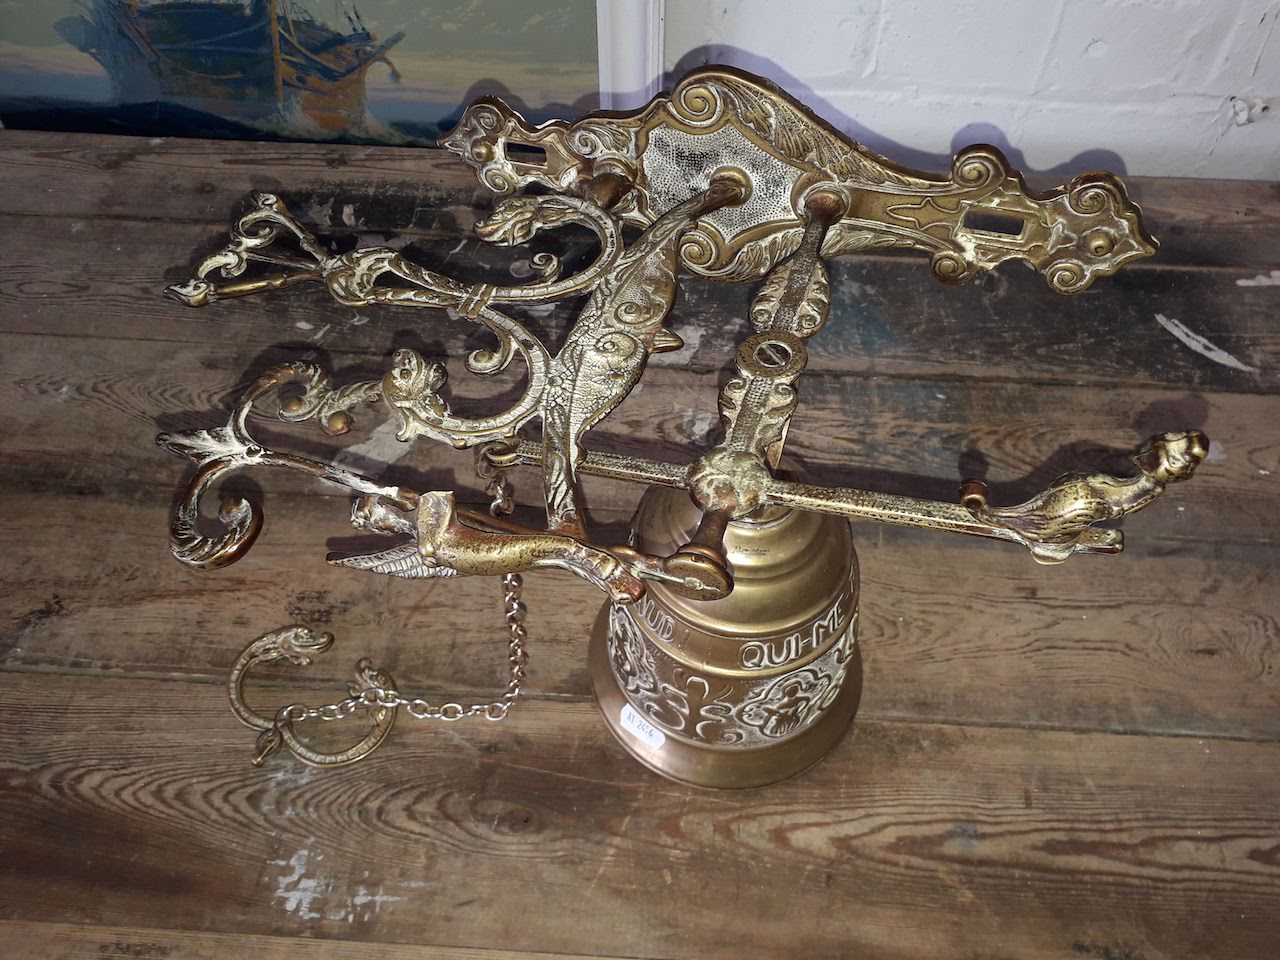 An outdoor brass bell, bell height 20cm.